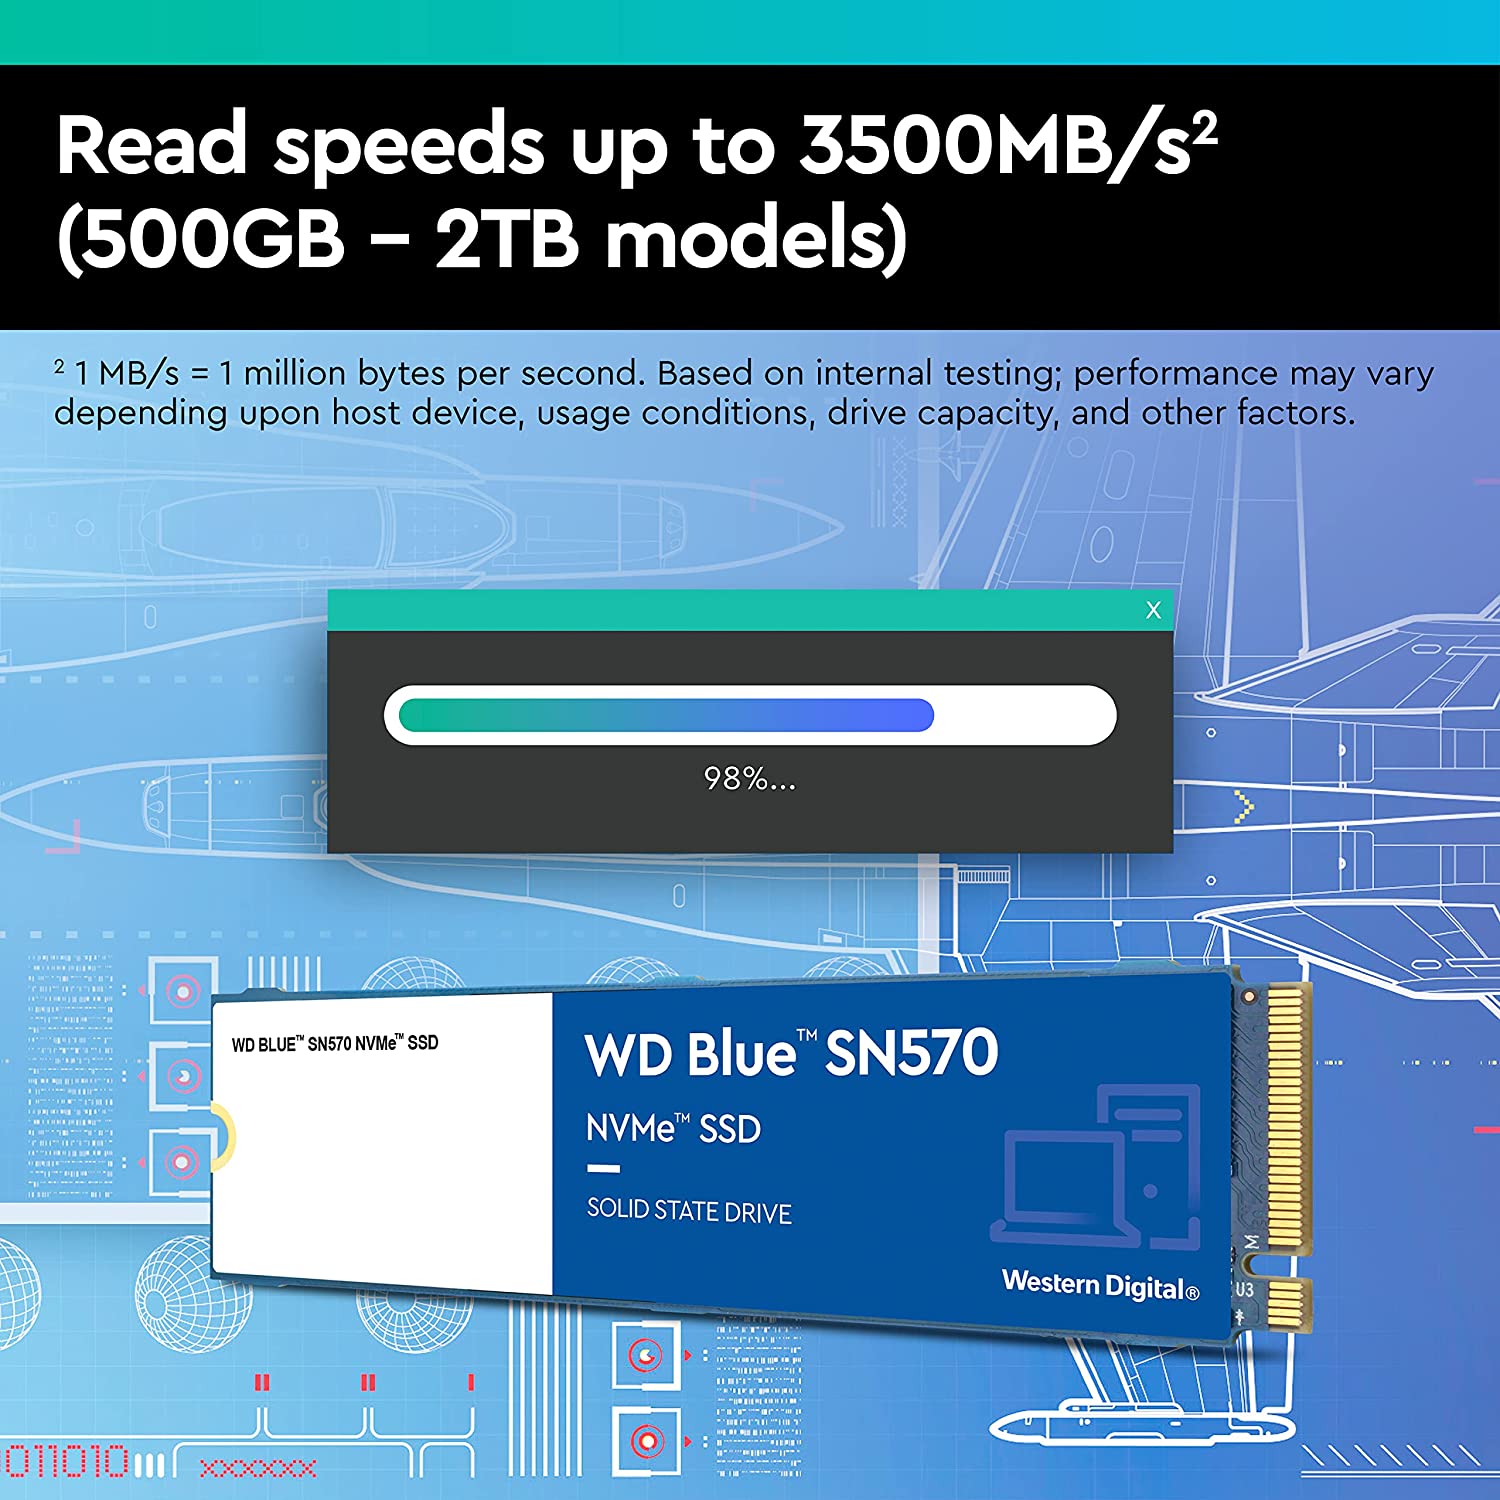 Western Digital 1TB WD Blue SN570 NVMe Internal Solid State Drive SSD - Gen3 x4 PCIe 8GB/s, M.2 2280, Up to 3,500 MB/s - WDS100T3B0C